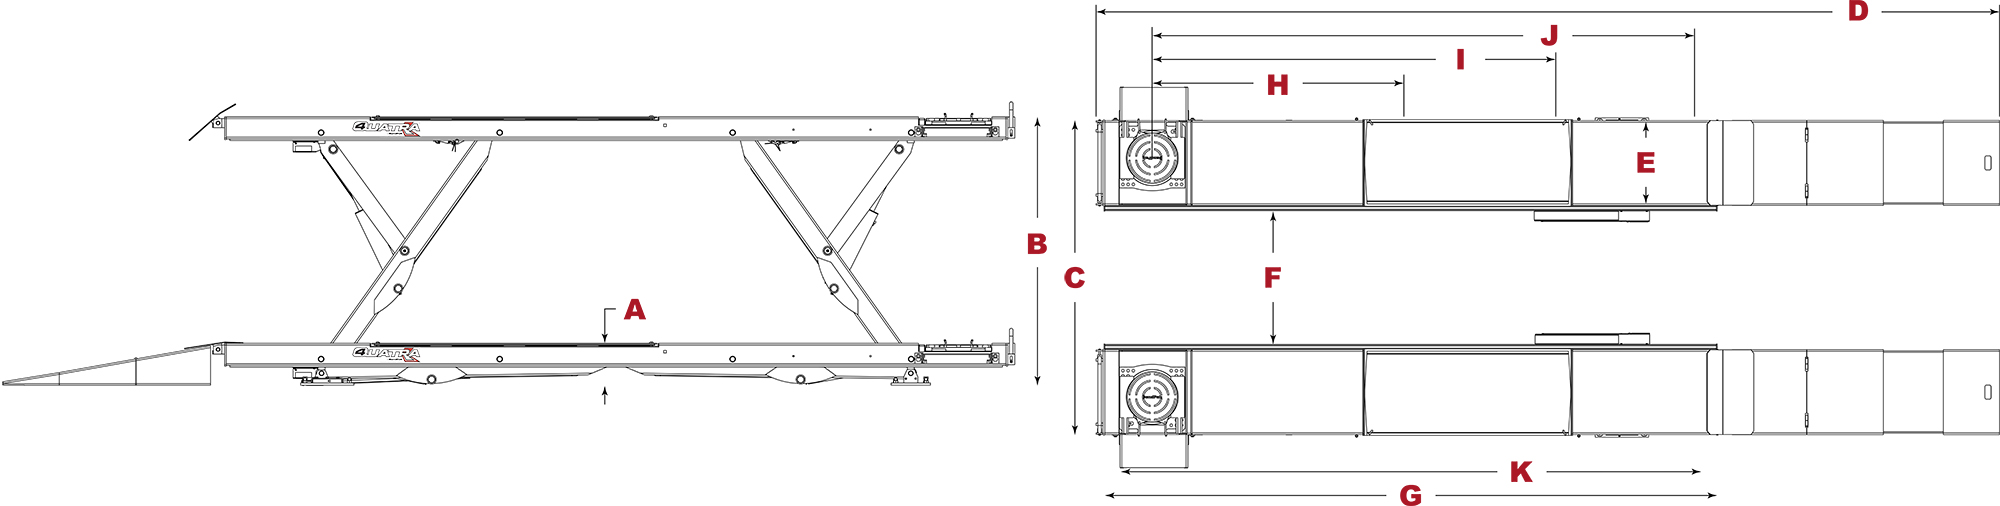 XR-12000AL specs diagram